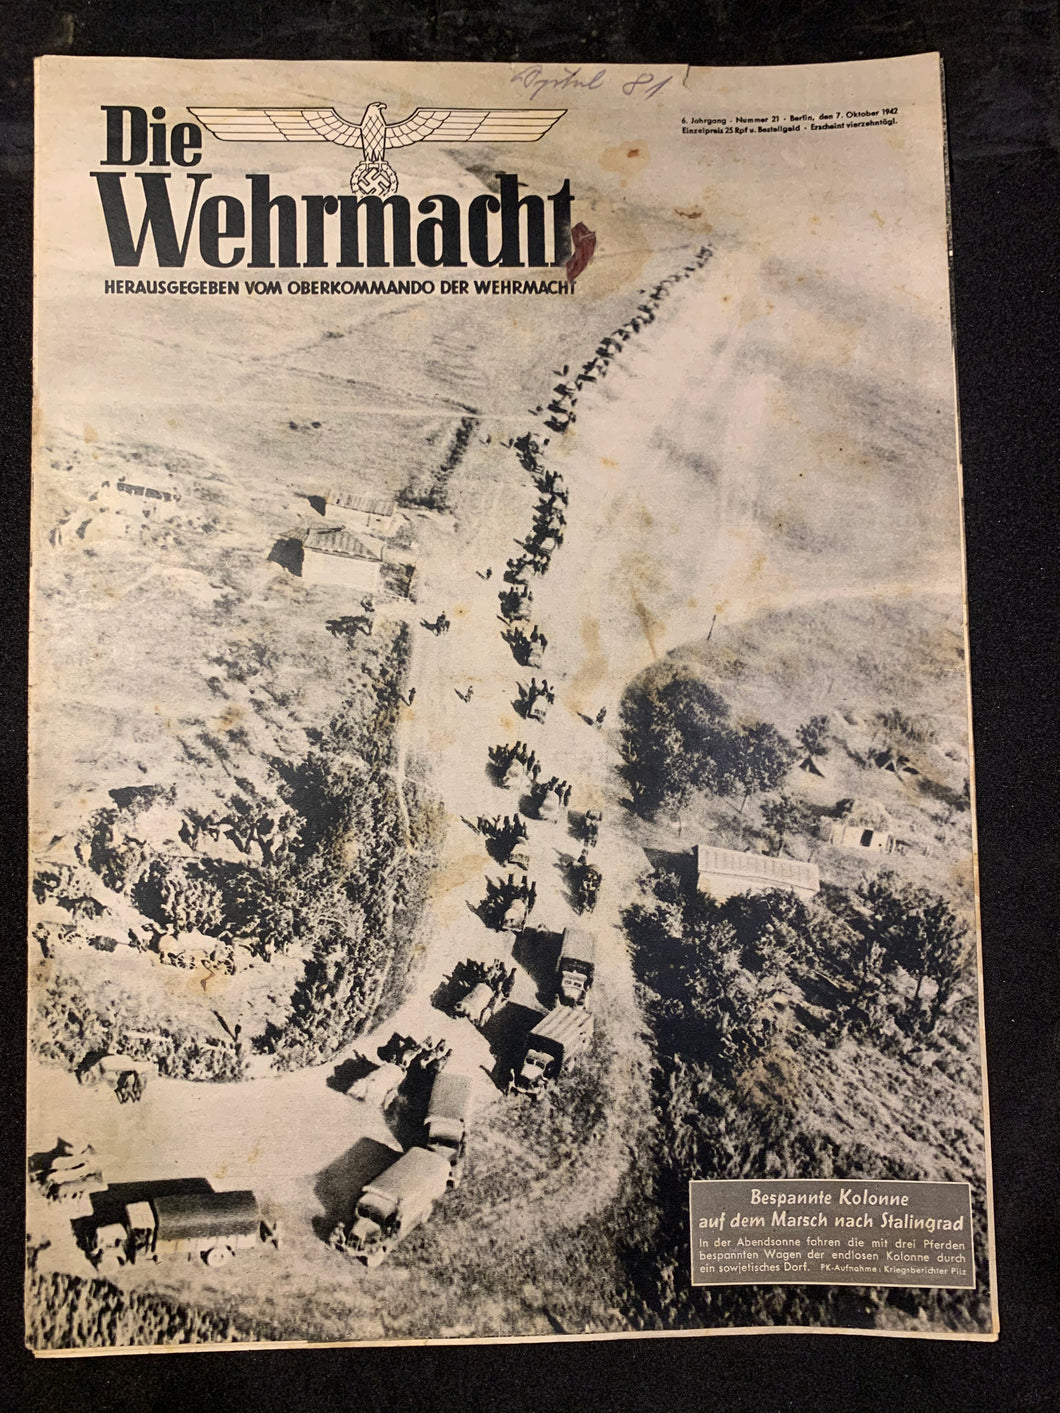 Die Wehrmacht Magazine Original WW2 German - 7th October 1942 - #48